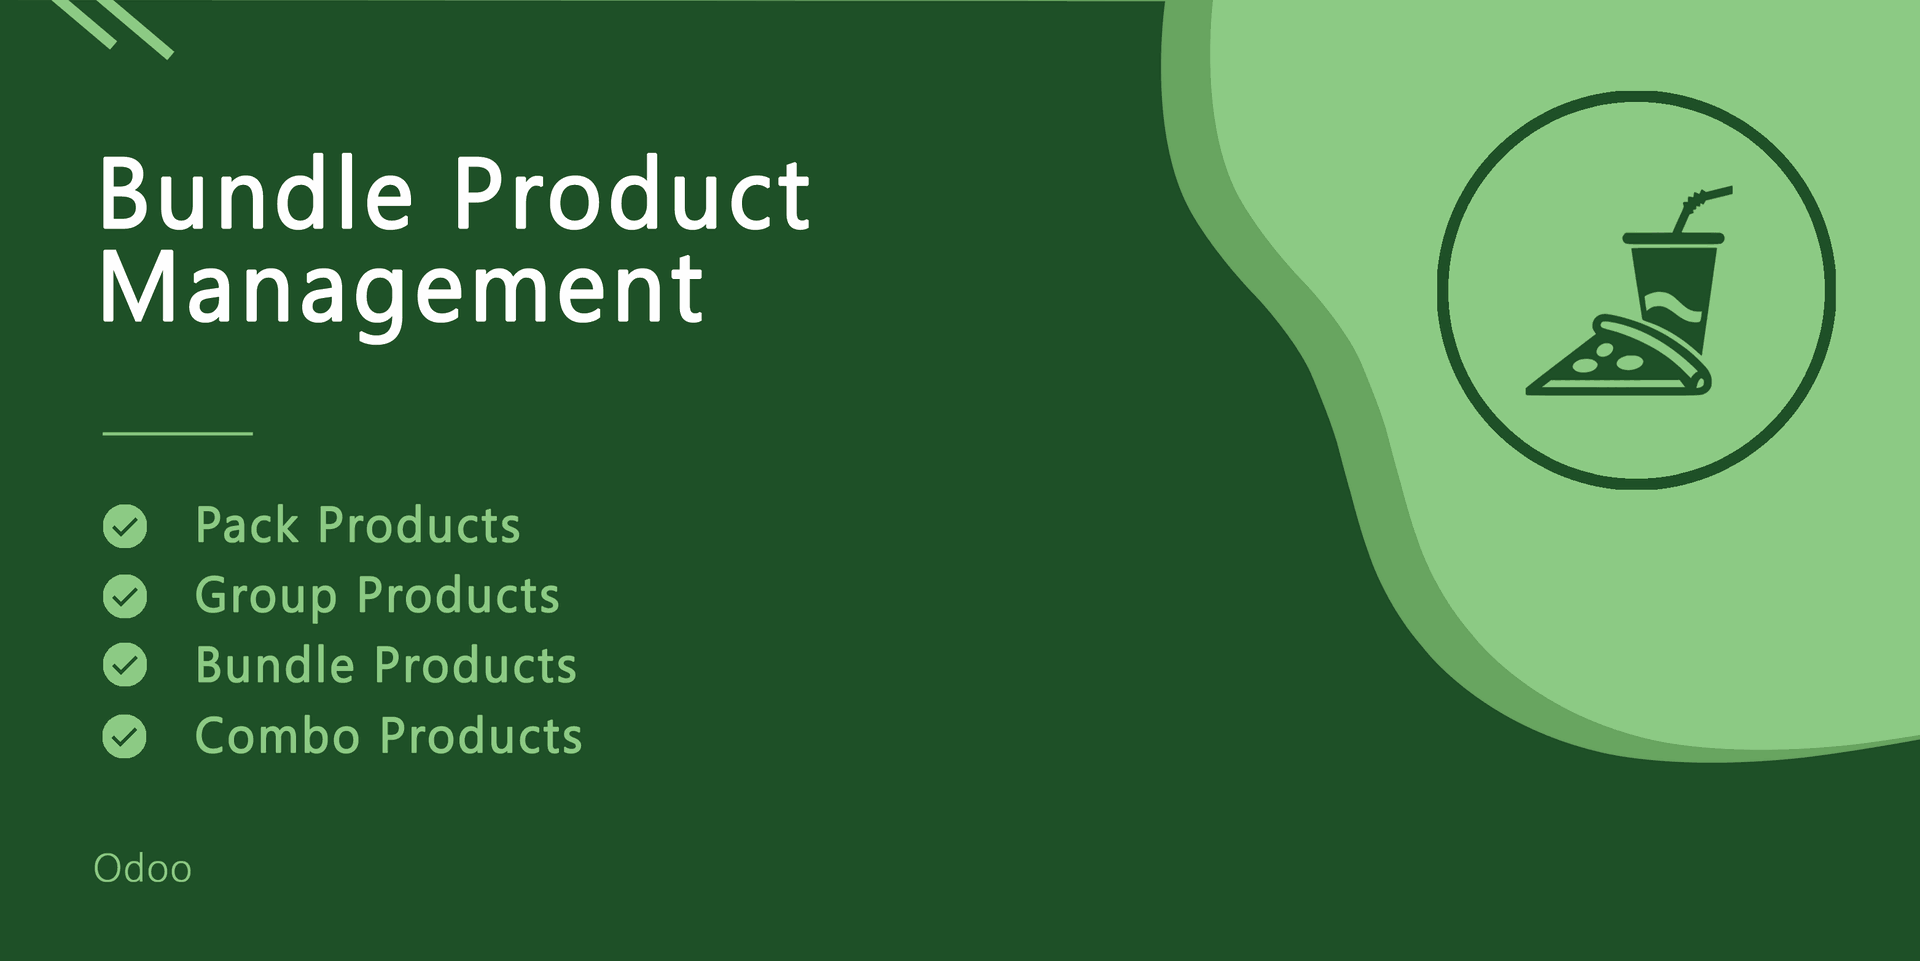 Bundle Product Management
